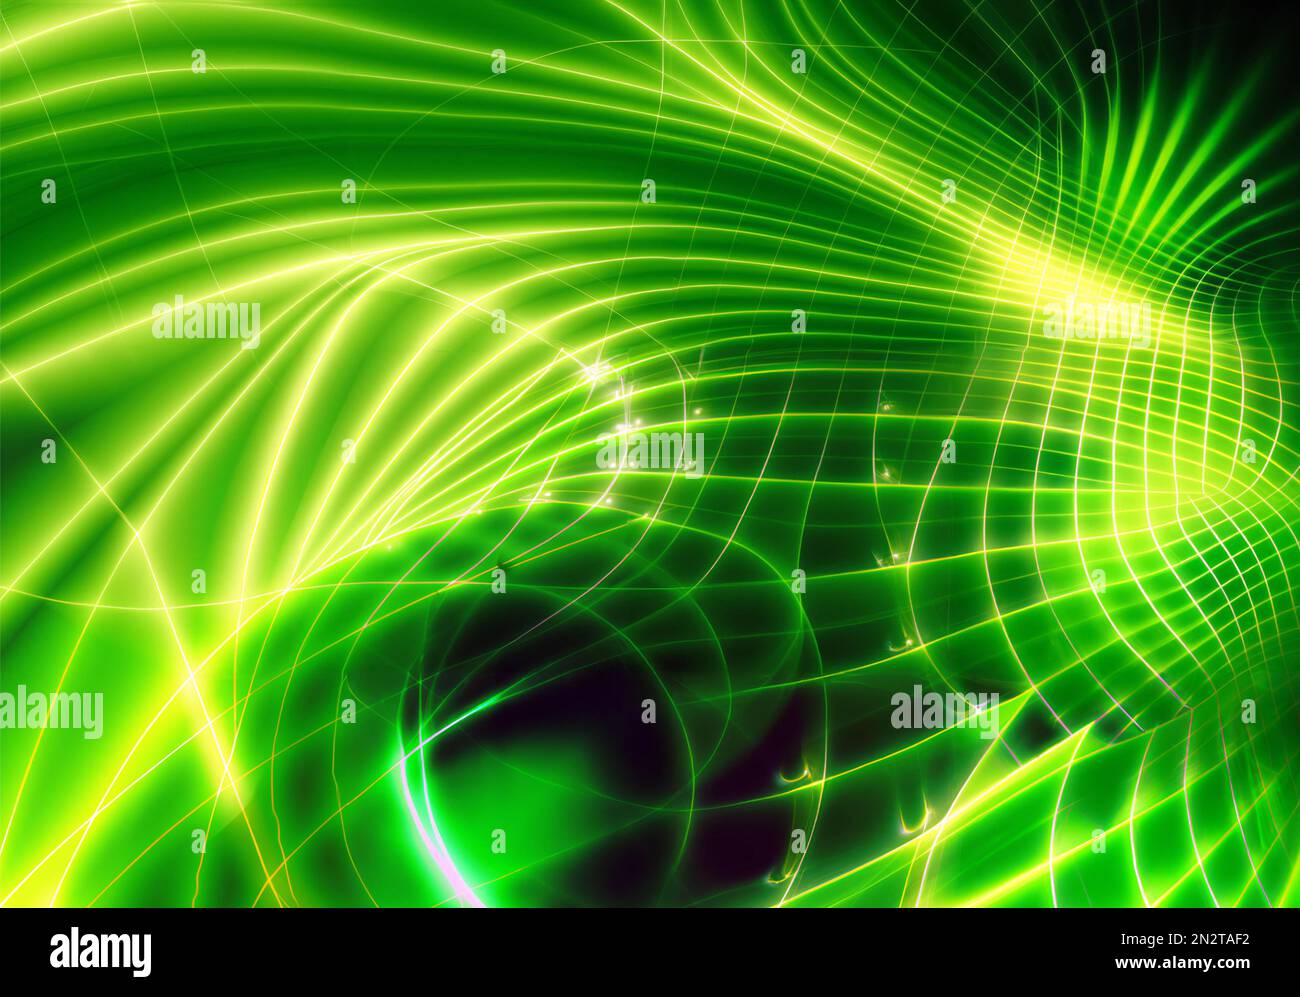 Arrière-plan abstrait vert futuriste avec des lignes de néon brillantes formant un ornement géométrique dans l'obscurité Banque D'Images